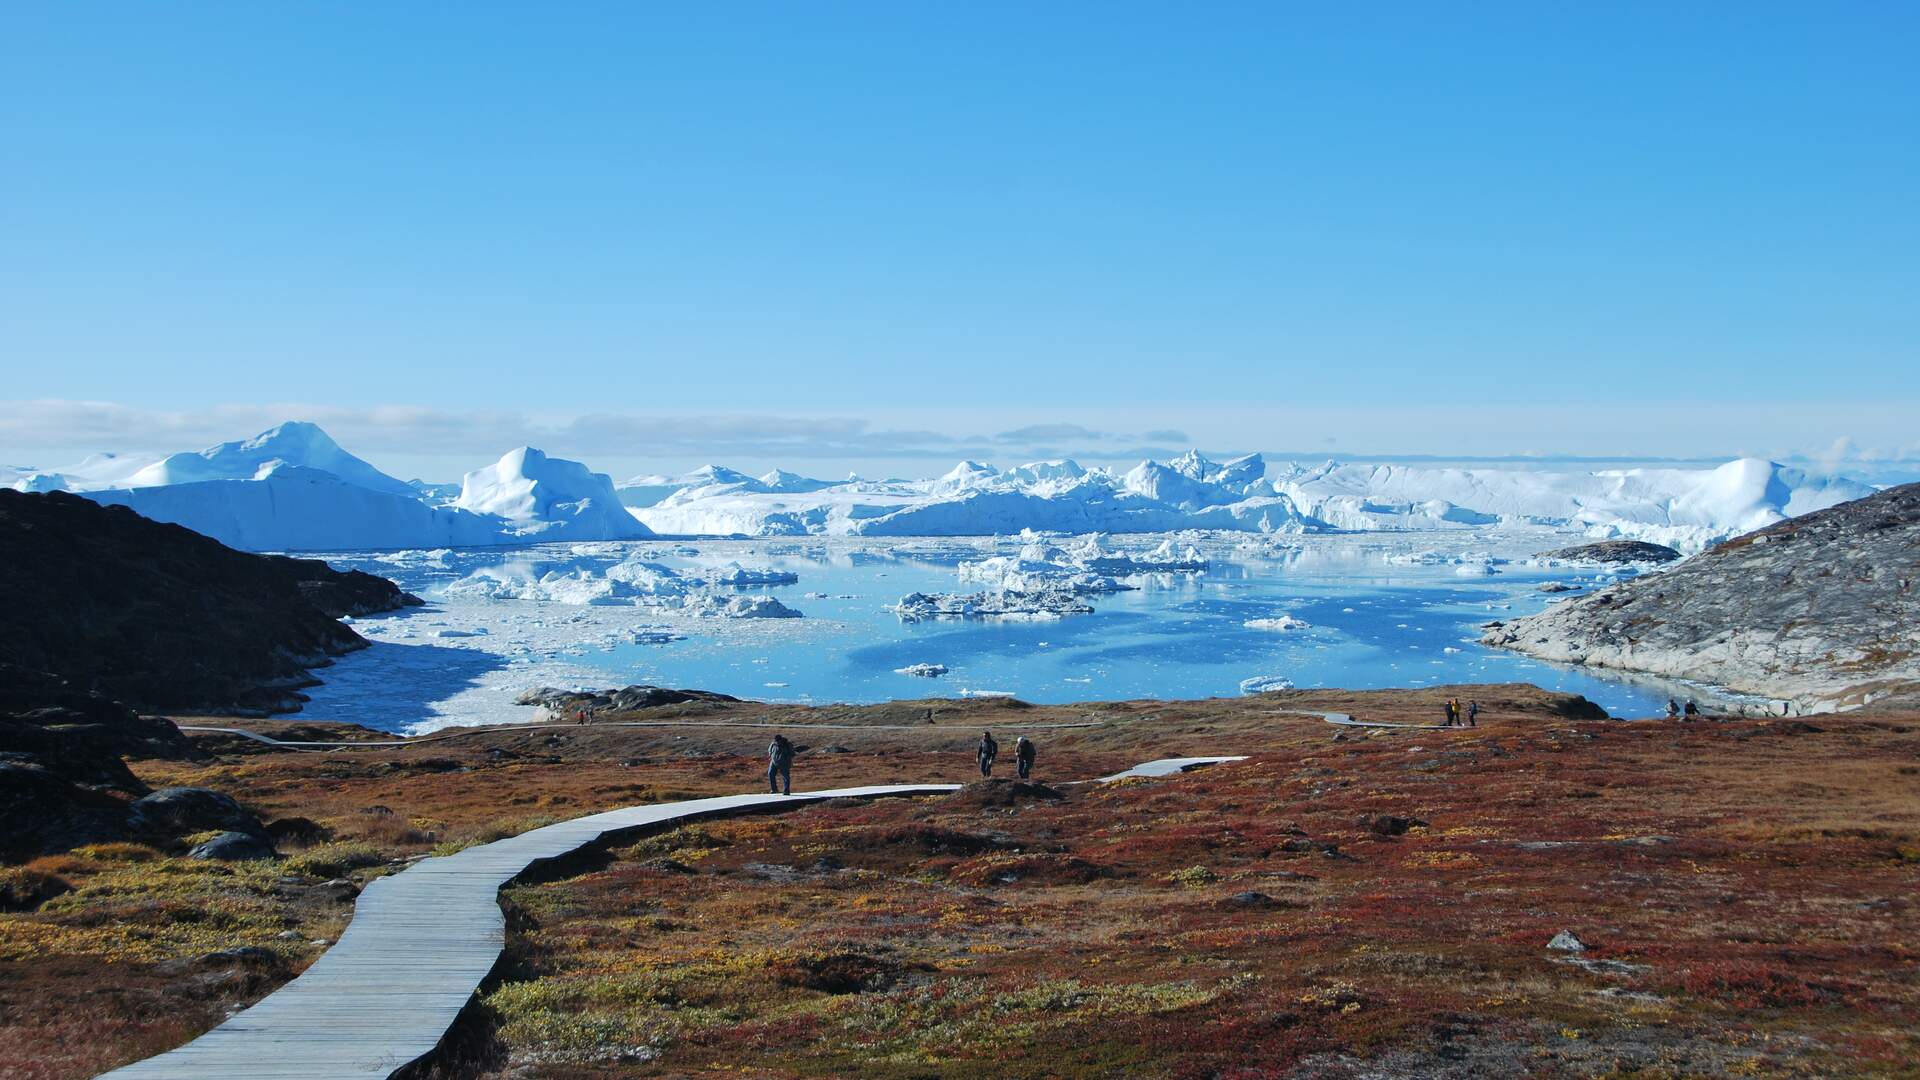 Арктические пустыни изменение природы человеком. Северо-американская Арктика Гренландия. Кангерлуссуак-Фьорд Гренландия. Гренландия арктические пустыни.